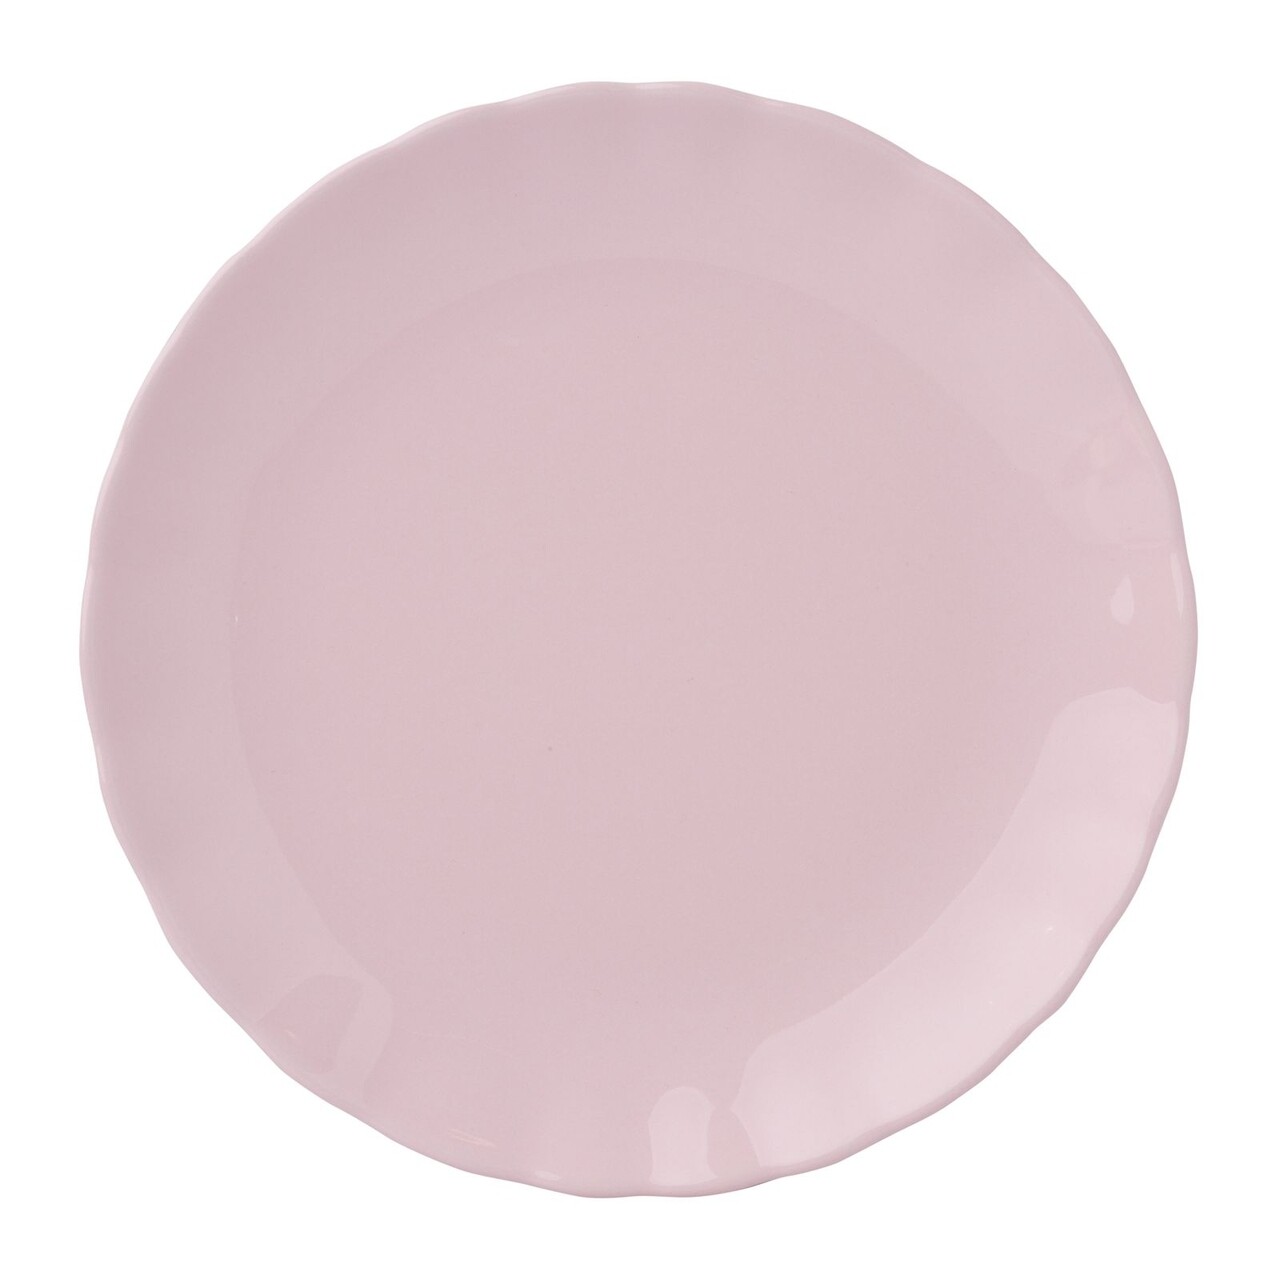 Diana Rusztikus Desszert tányér, Ambition, 19 cm, kerámia, rózsaszín